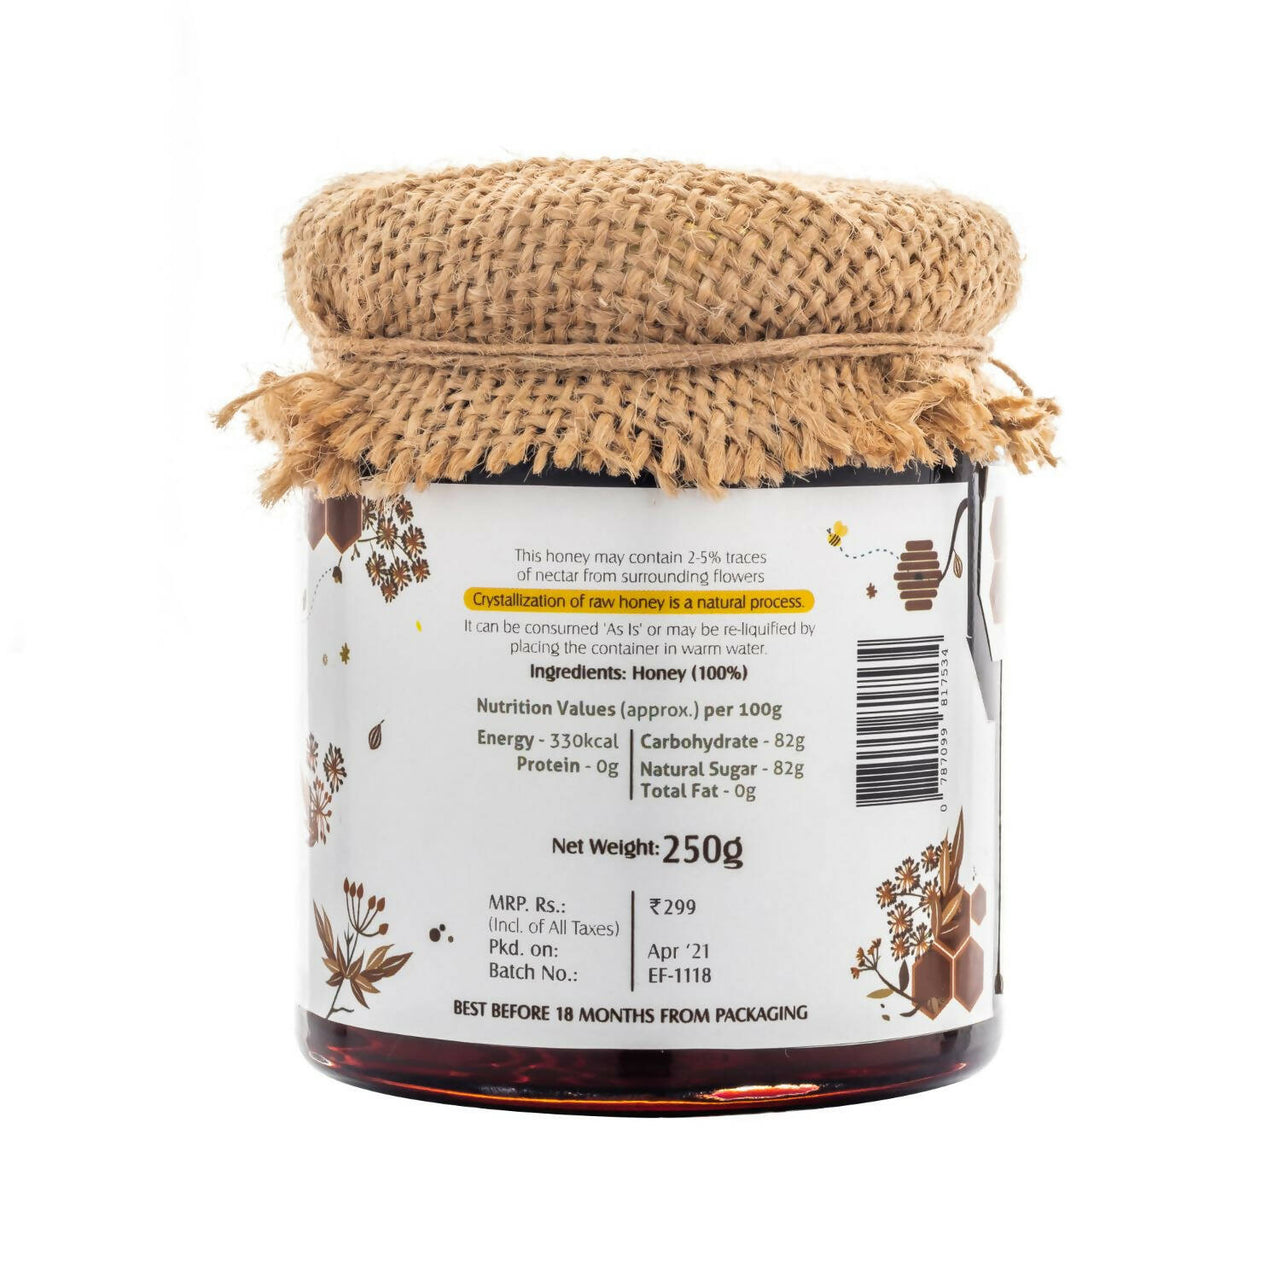 HoneyVeda Premium Raw Ajwain Honey - Distacart